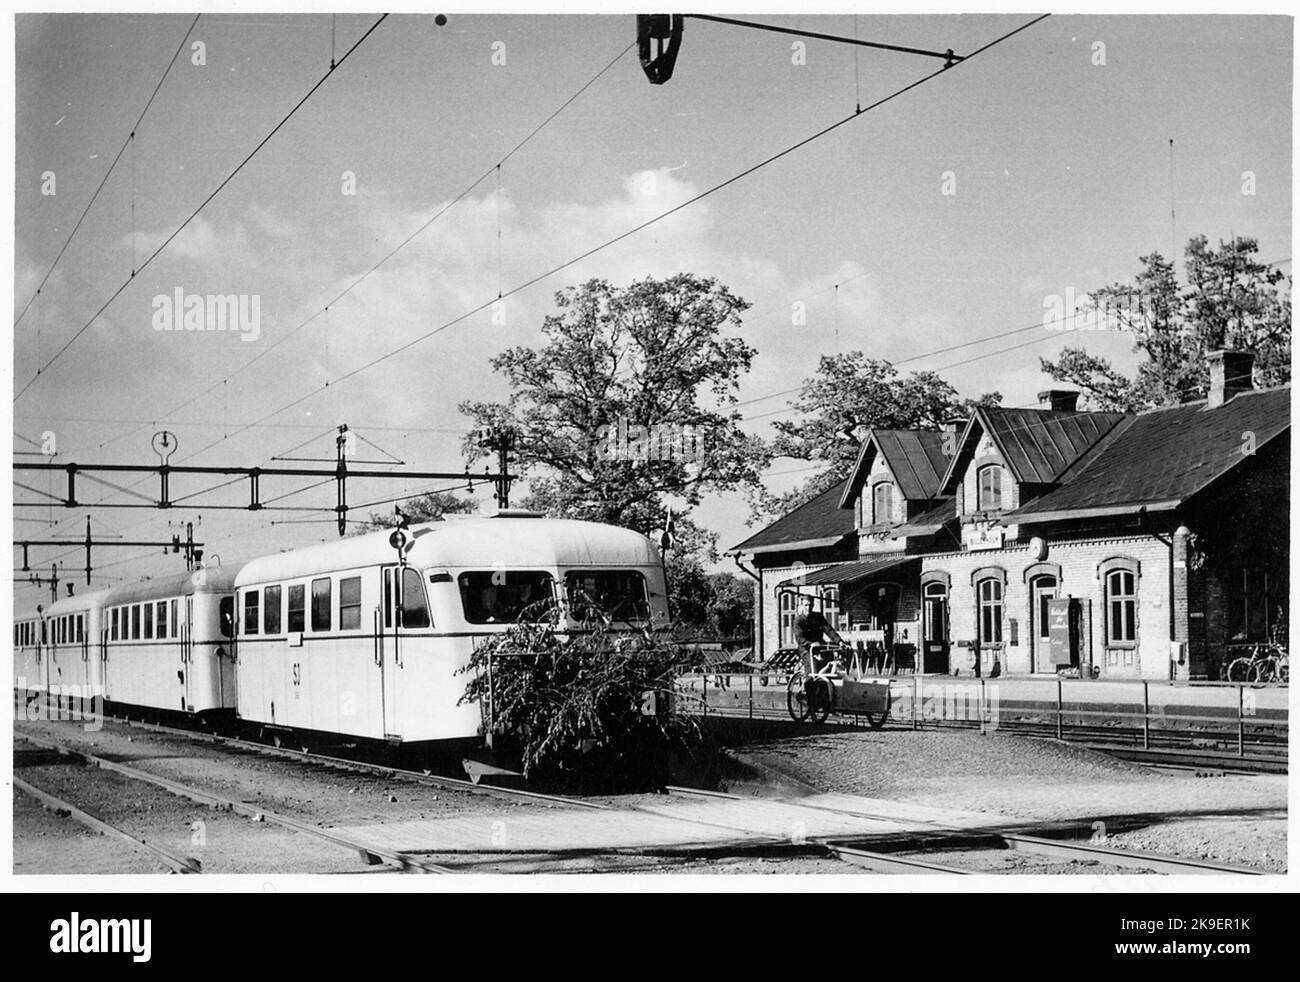 Stazione di Billesholm dall'arrivo di Last Train a Billesholm e l'ultima partenza da Billesholm il 29 maggio 1960. Il nome era la miniera di Billesholm del 1943. La stazione costruita nel 1875 da Lion, le ferrovie di Landskrona - Engelholm. La stazione costruita nel 1876. Una casa stazione su un piano in pietra. Foto Stock